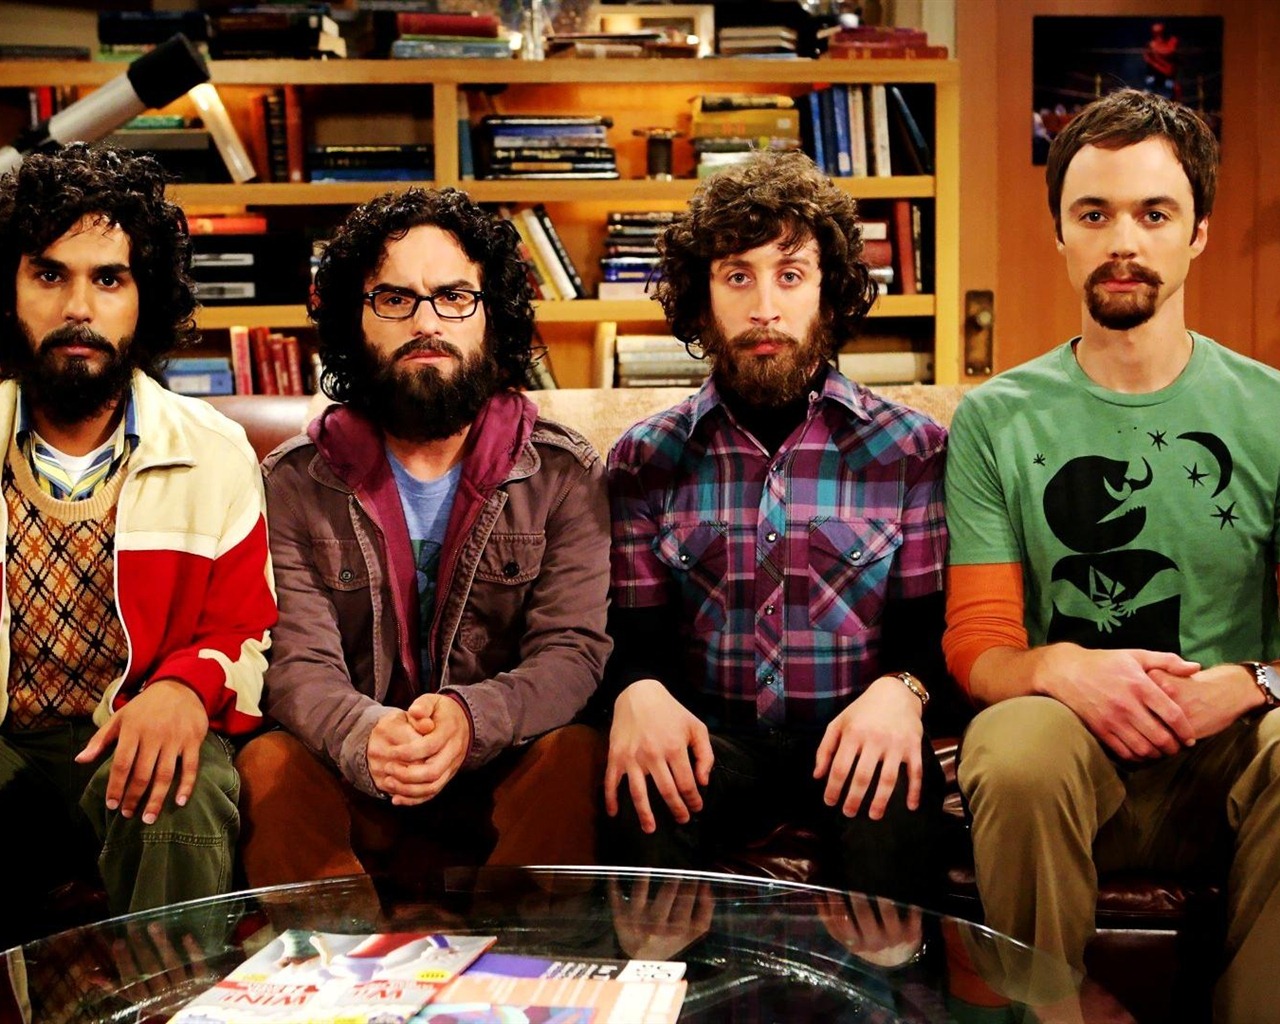 The Big Bang Theory 生活大爆炸 电视剧高清壁纸23 - 1280x1024